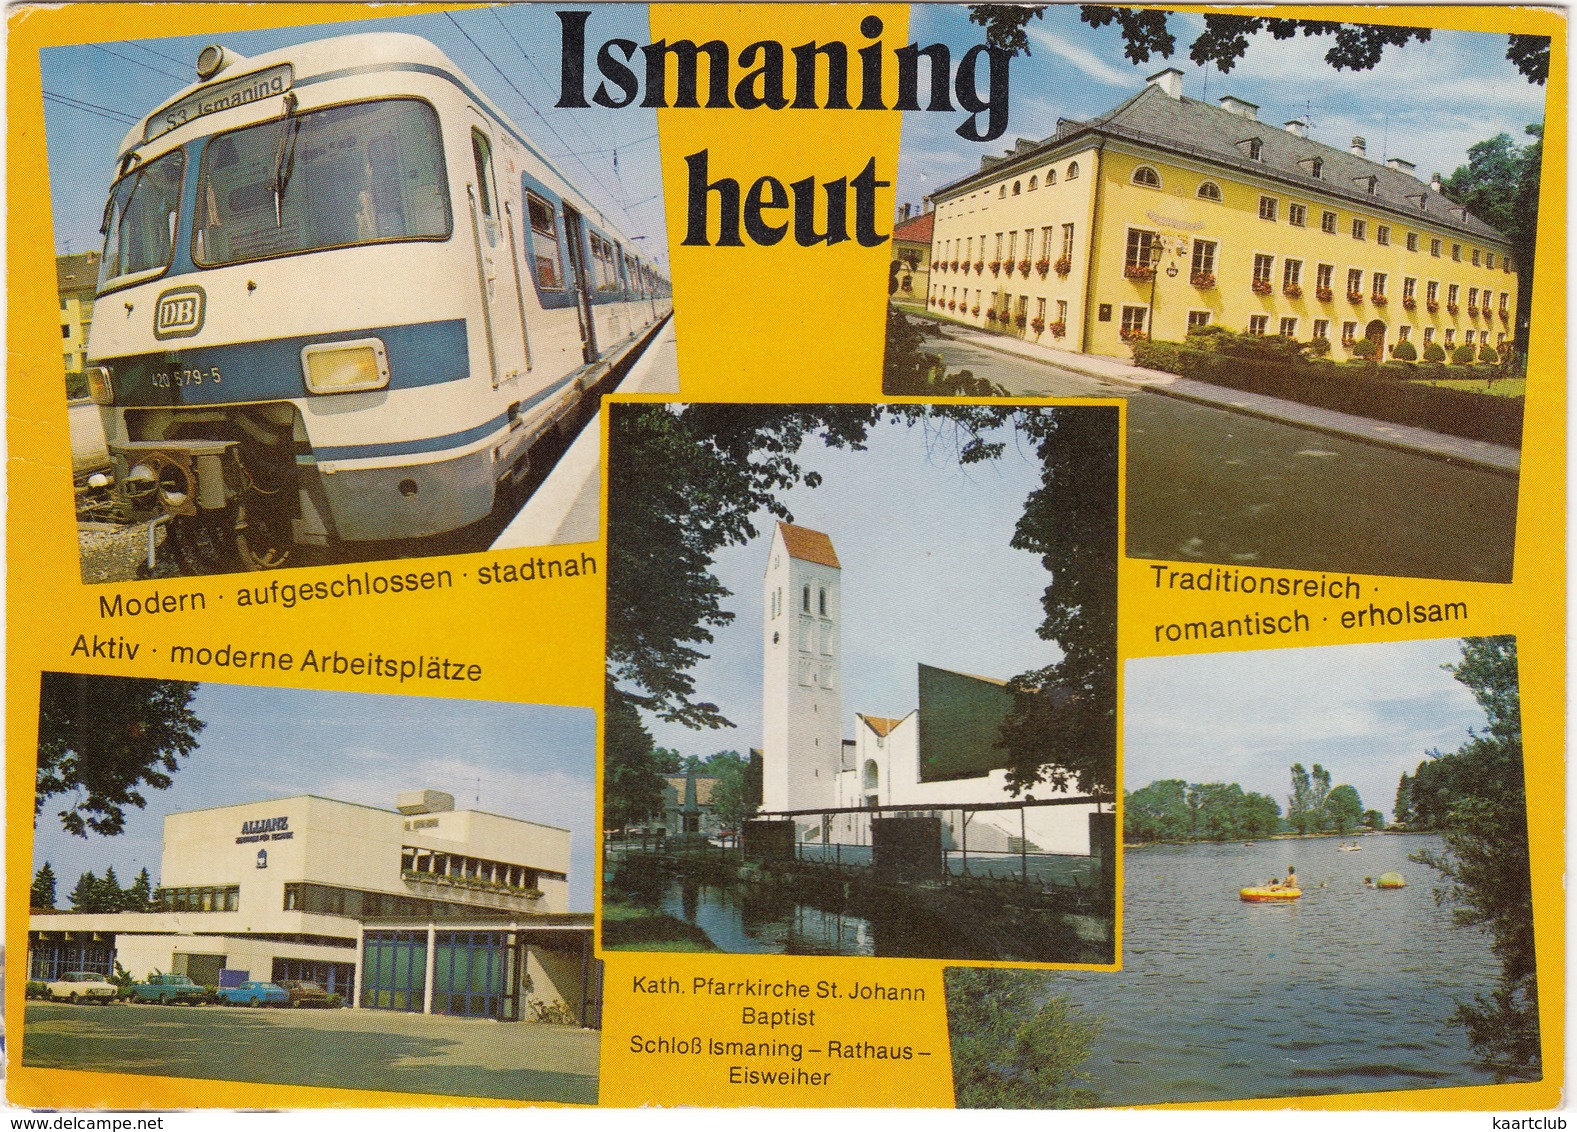 Ismaning Bei München : 'S3 Ismaning' DB (S-Bahn München) - Trains